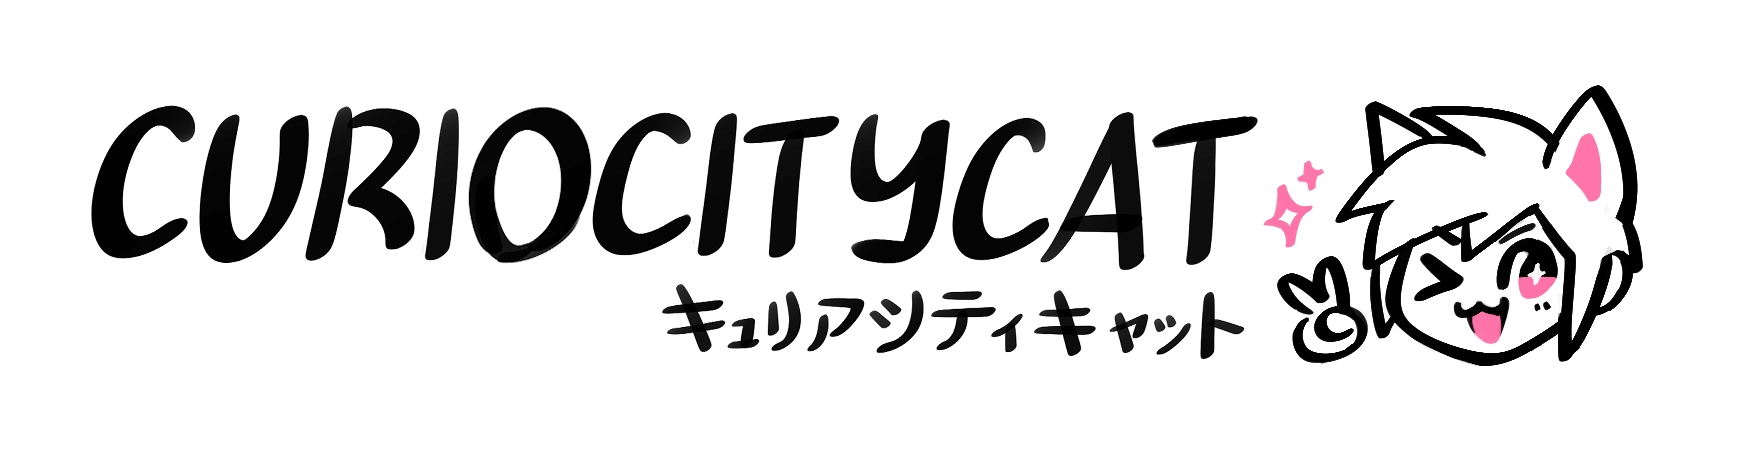 Curiocitycat